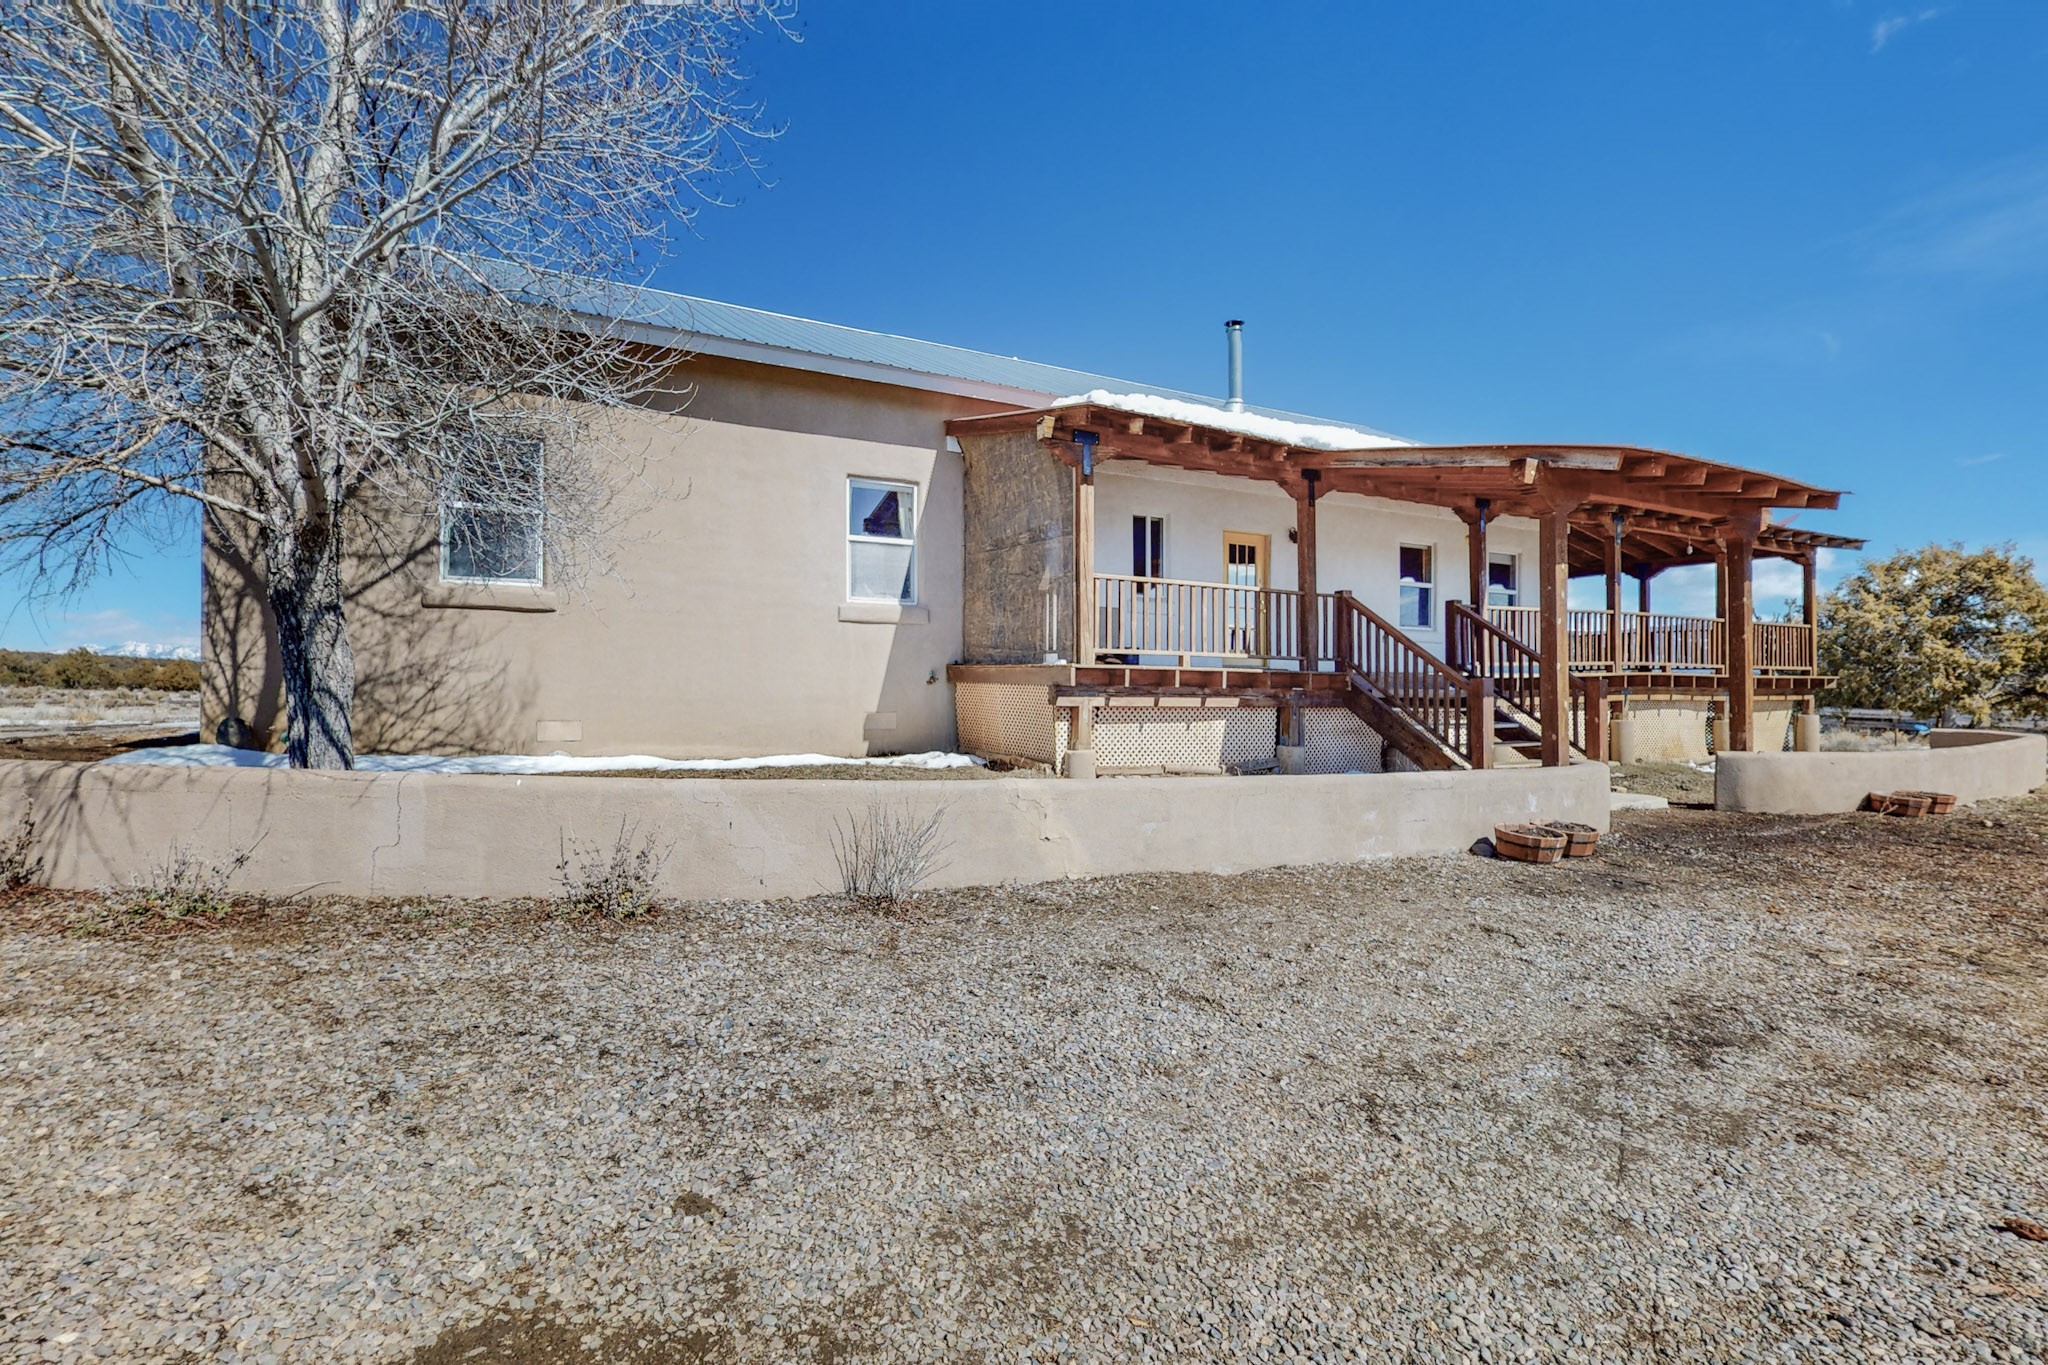 118 NM-95, Los Ojos, New Mexico 87551, 3 Bedrooms Bedrooms, ,2 BathroomsBathrooms,Farm,For Sale,118 NM-95,202400537